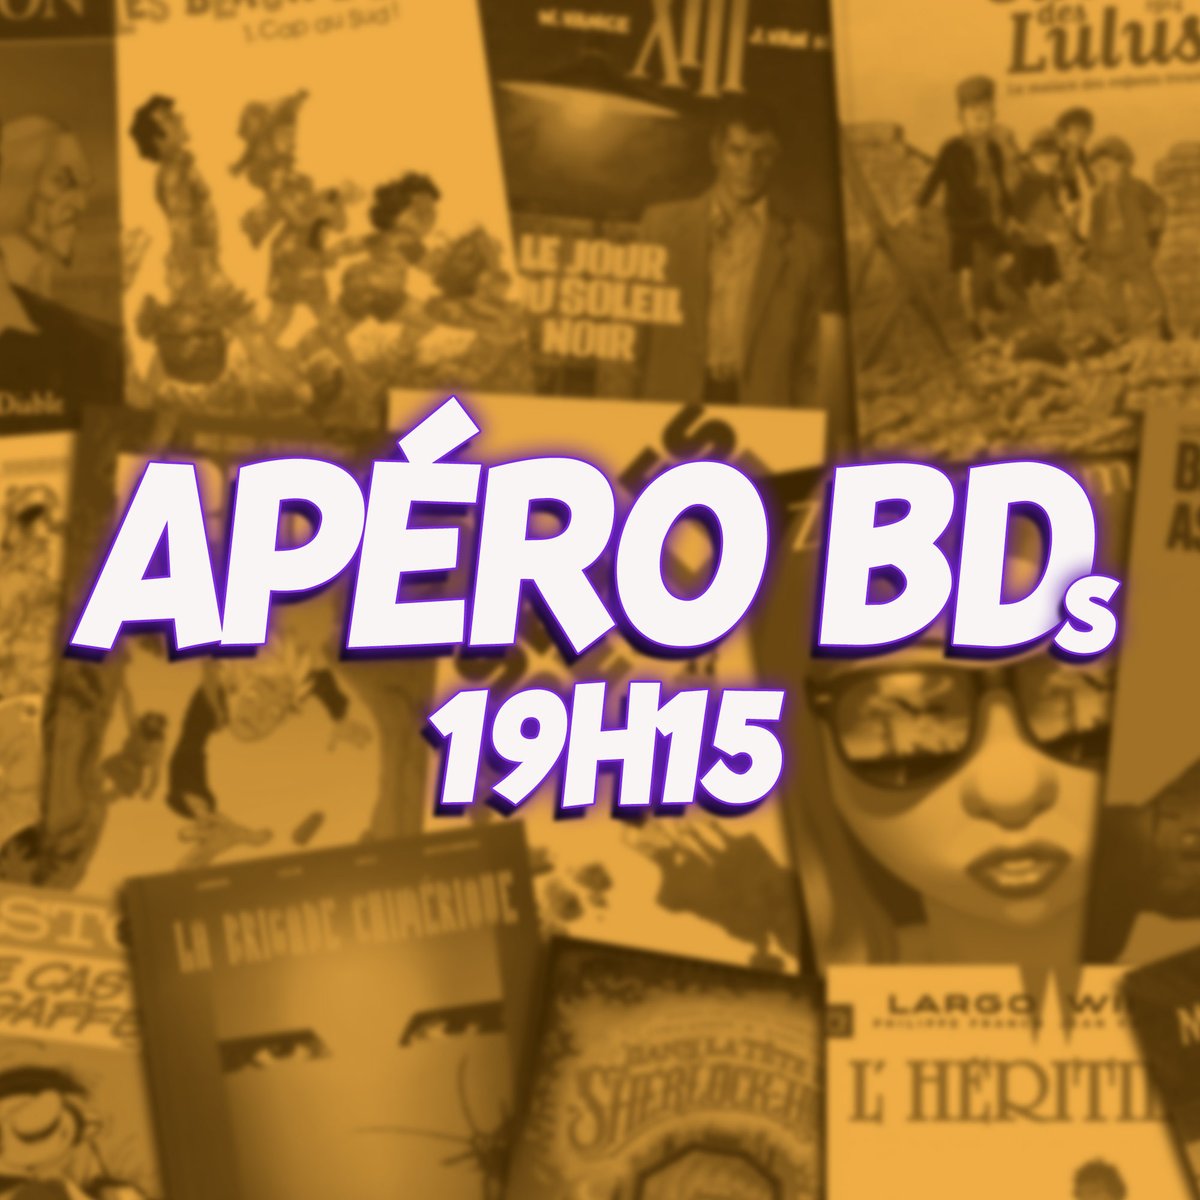 Ce soir vers 19h15 on parle BDs!
Lien du live==> urlz.fr/mo9G

#bandedessinees #apero #aperitif #copains #review